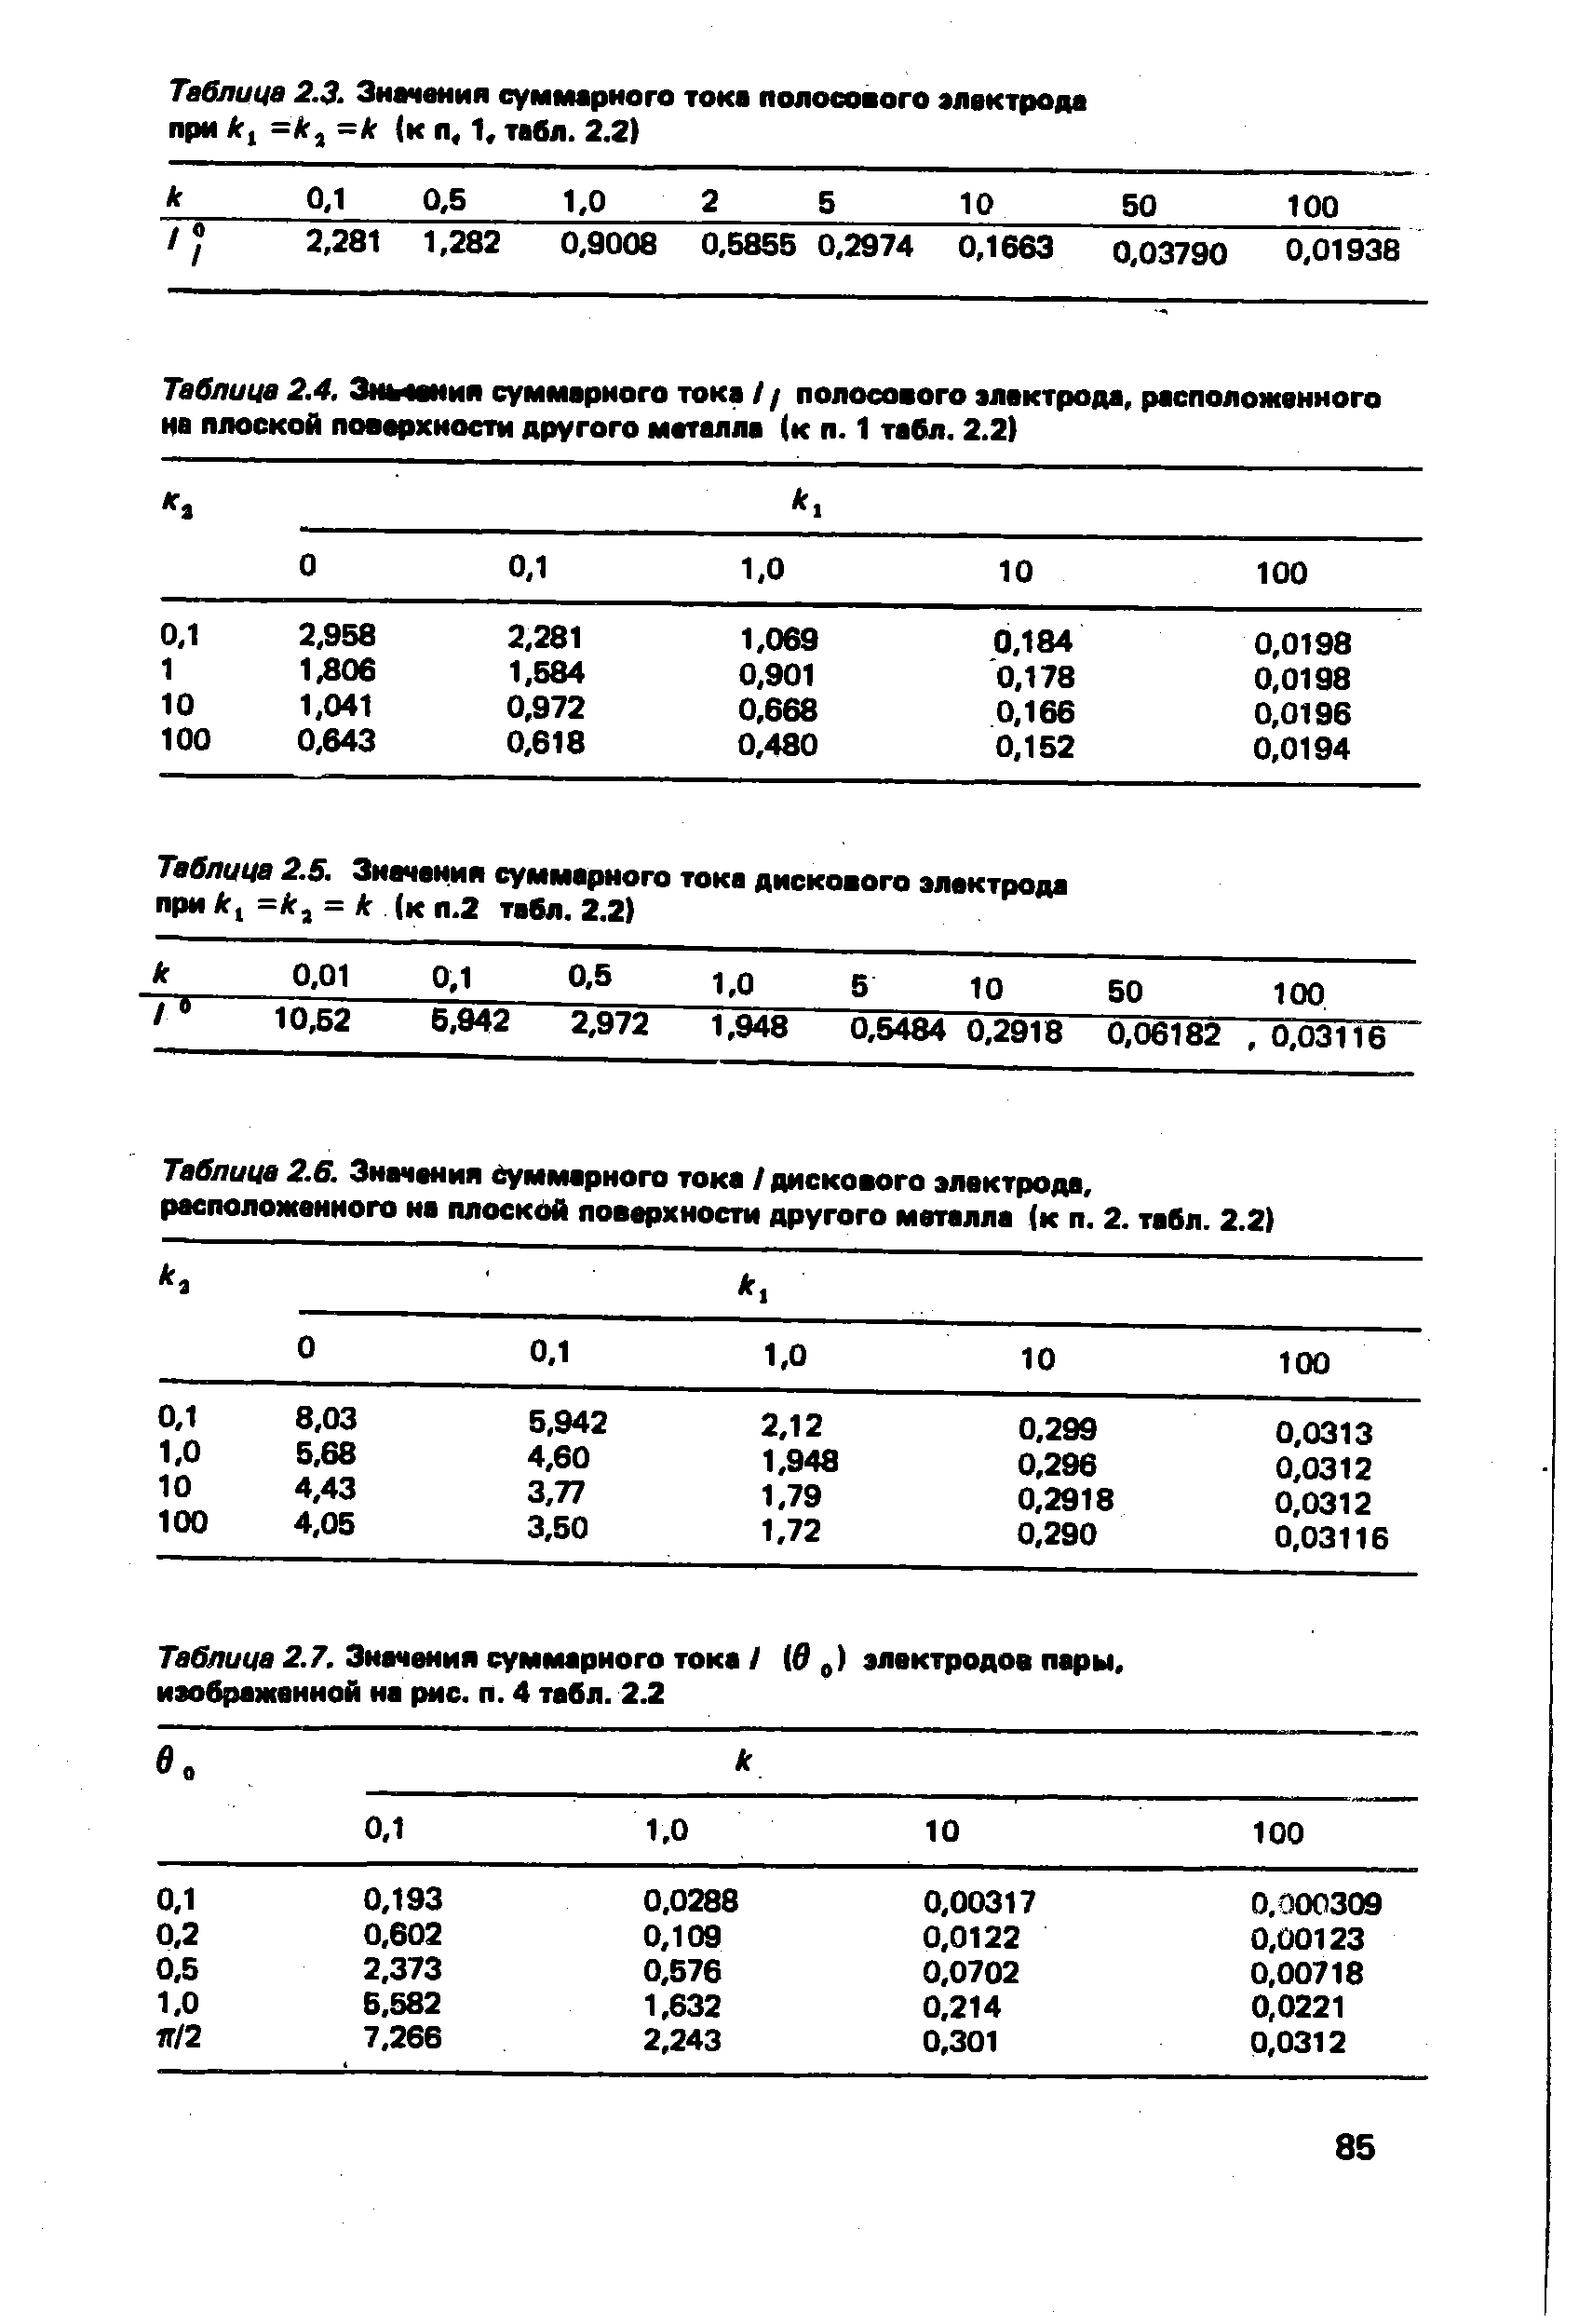 Таблица 2.6. Значения Суммарного тока / дискового электрода, расположенного иа плоскйй поверхности другого металла (к п. 2. табл. 2.2)
